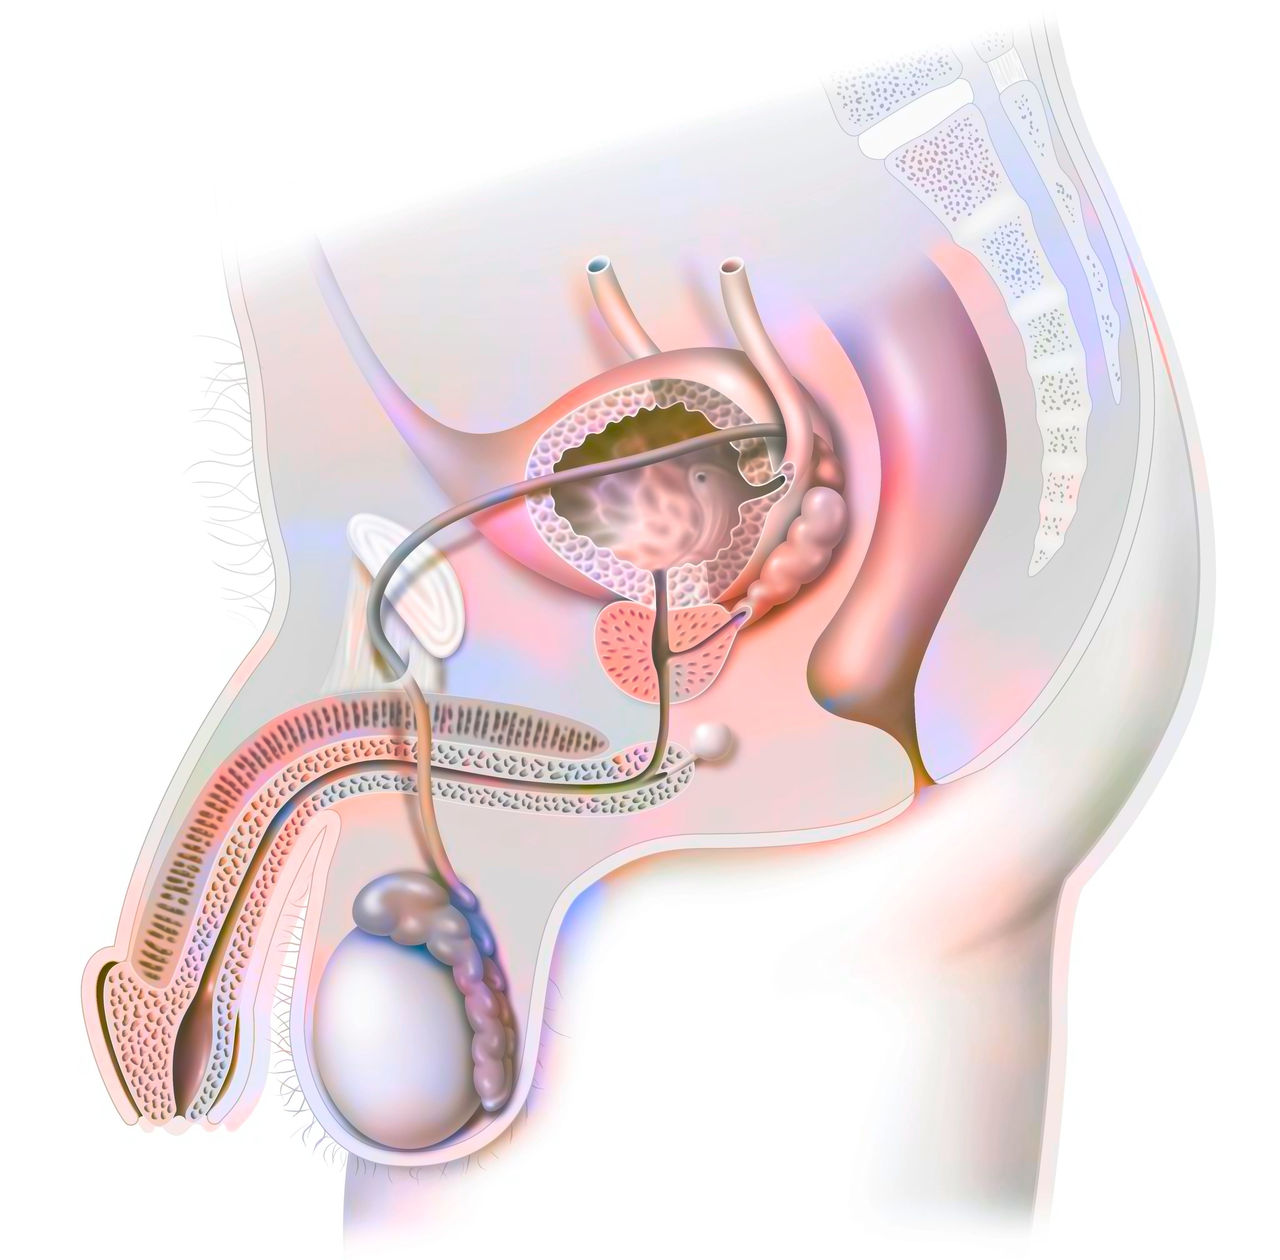 Penisprothese: „Eine zuverlässige Methode bei anhaltender Impotenz“ 